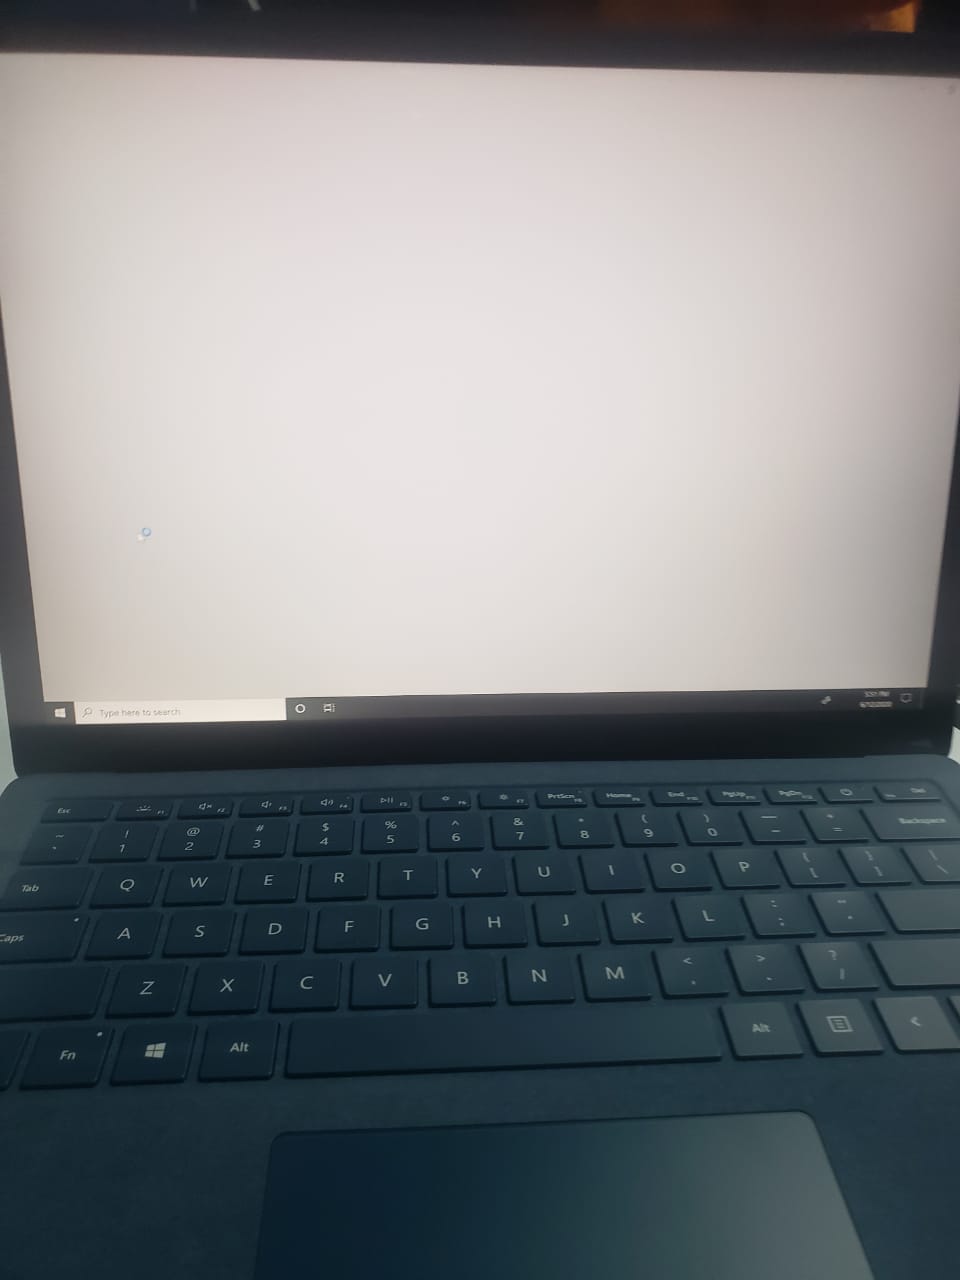 No Sound on my Laptop 3 - Microsoft Community